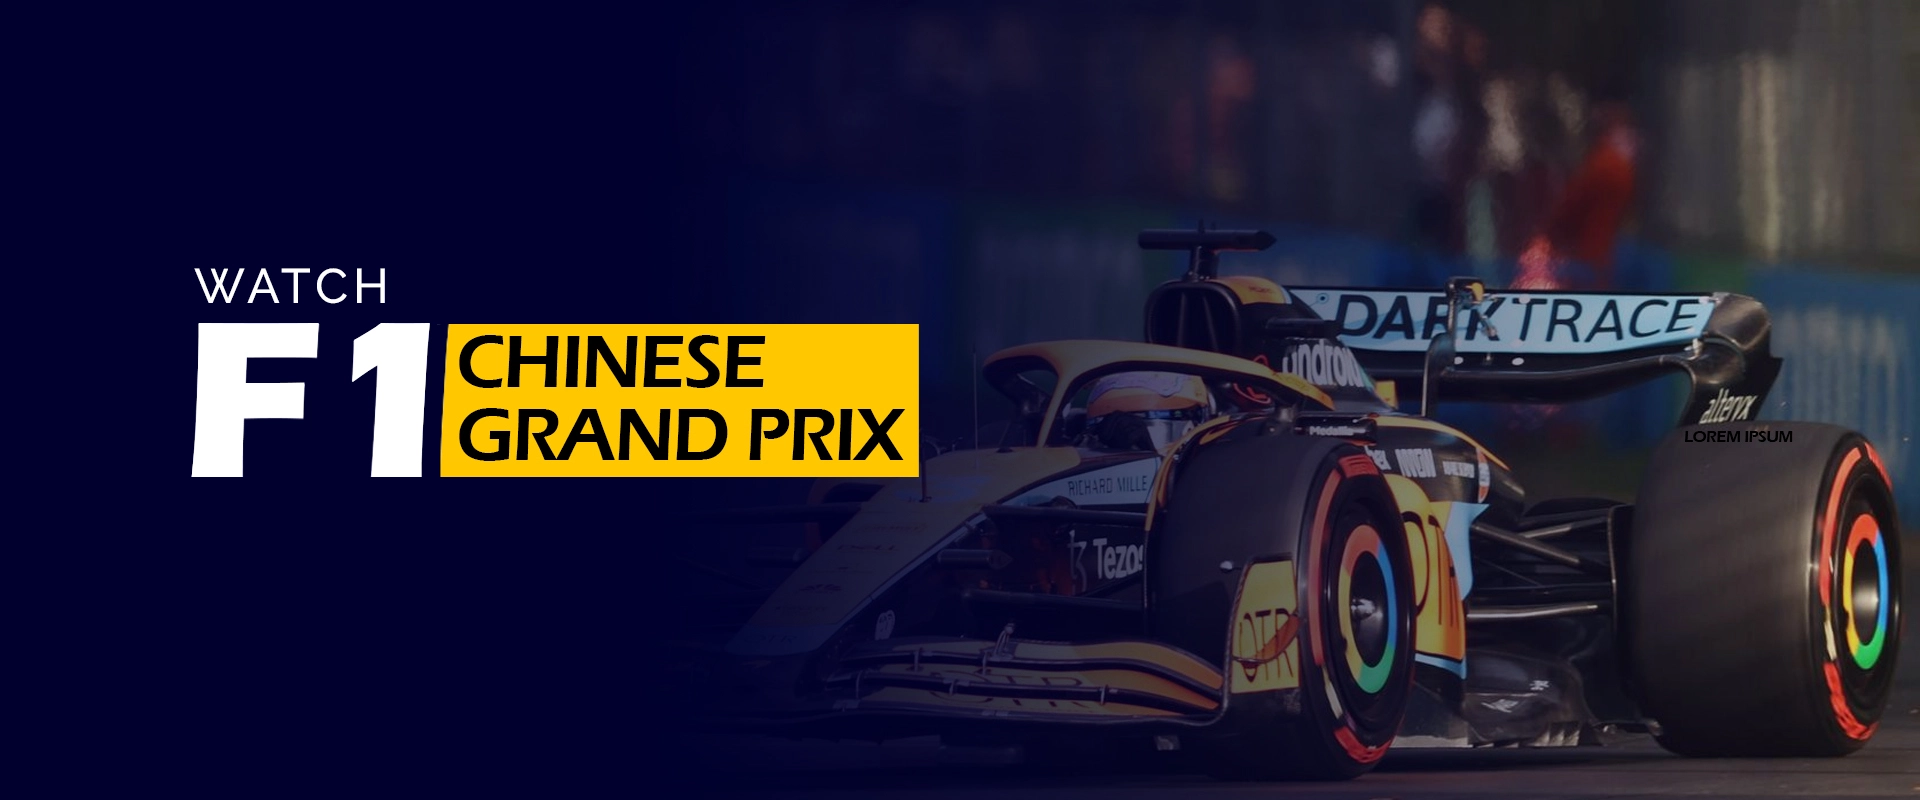 Regardez le Grand Prix de CHINOIS F1